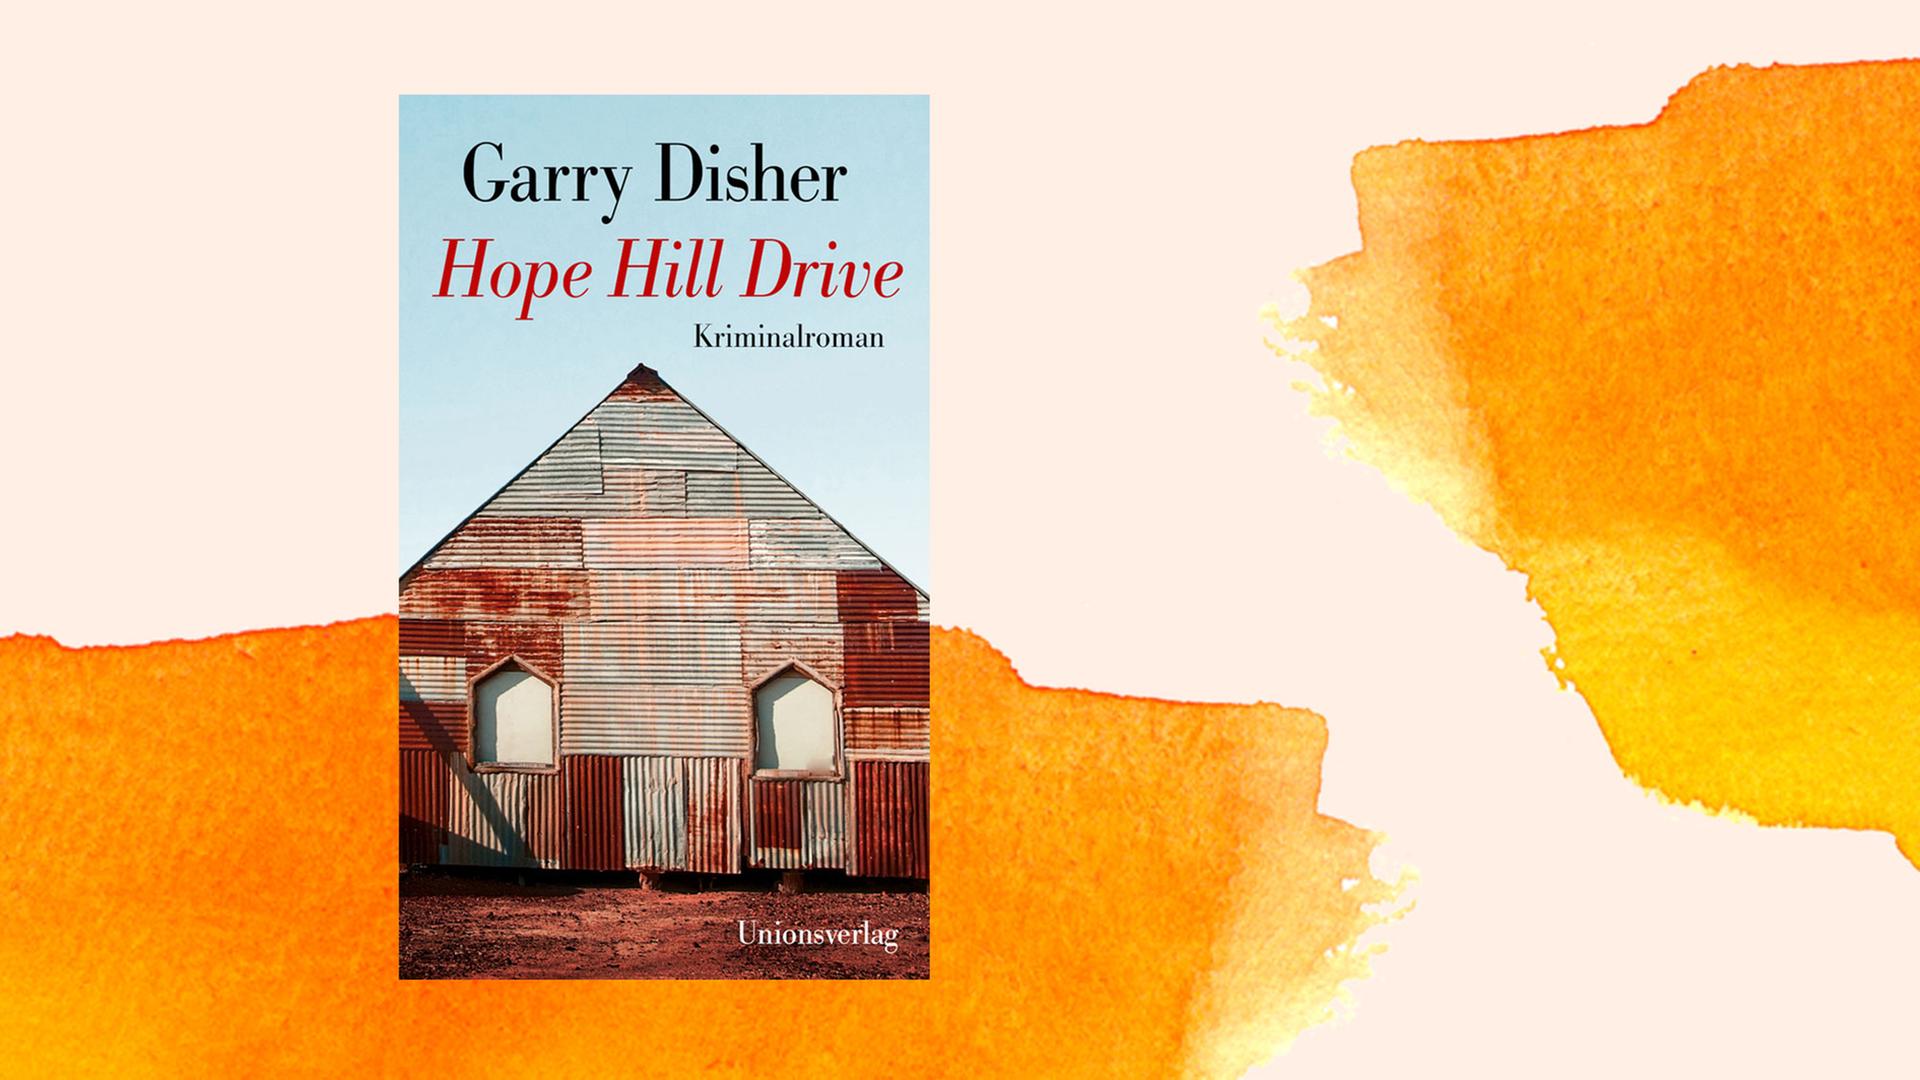 Das Buchcover von Garry Dishers Krimi "Hope Hill Drive"